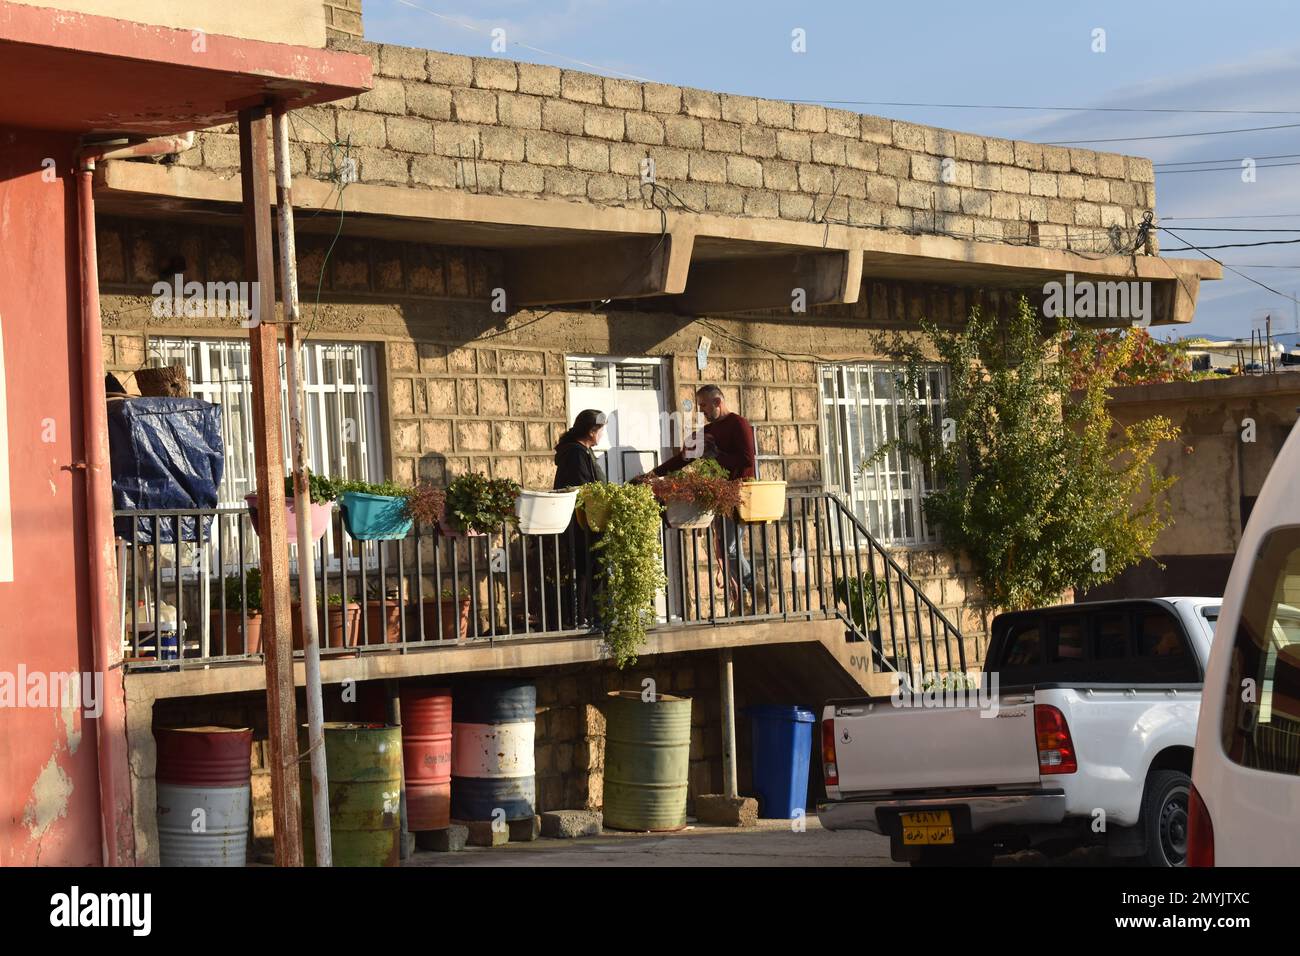 Un couple sur le balcon de leur maison de village dans le Kurdistan irakien Banque D'Images